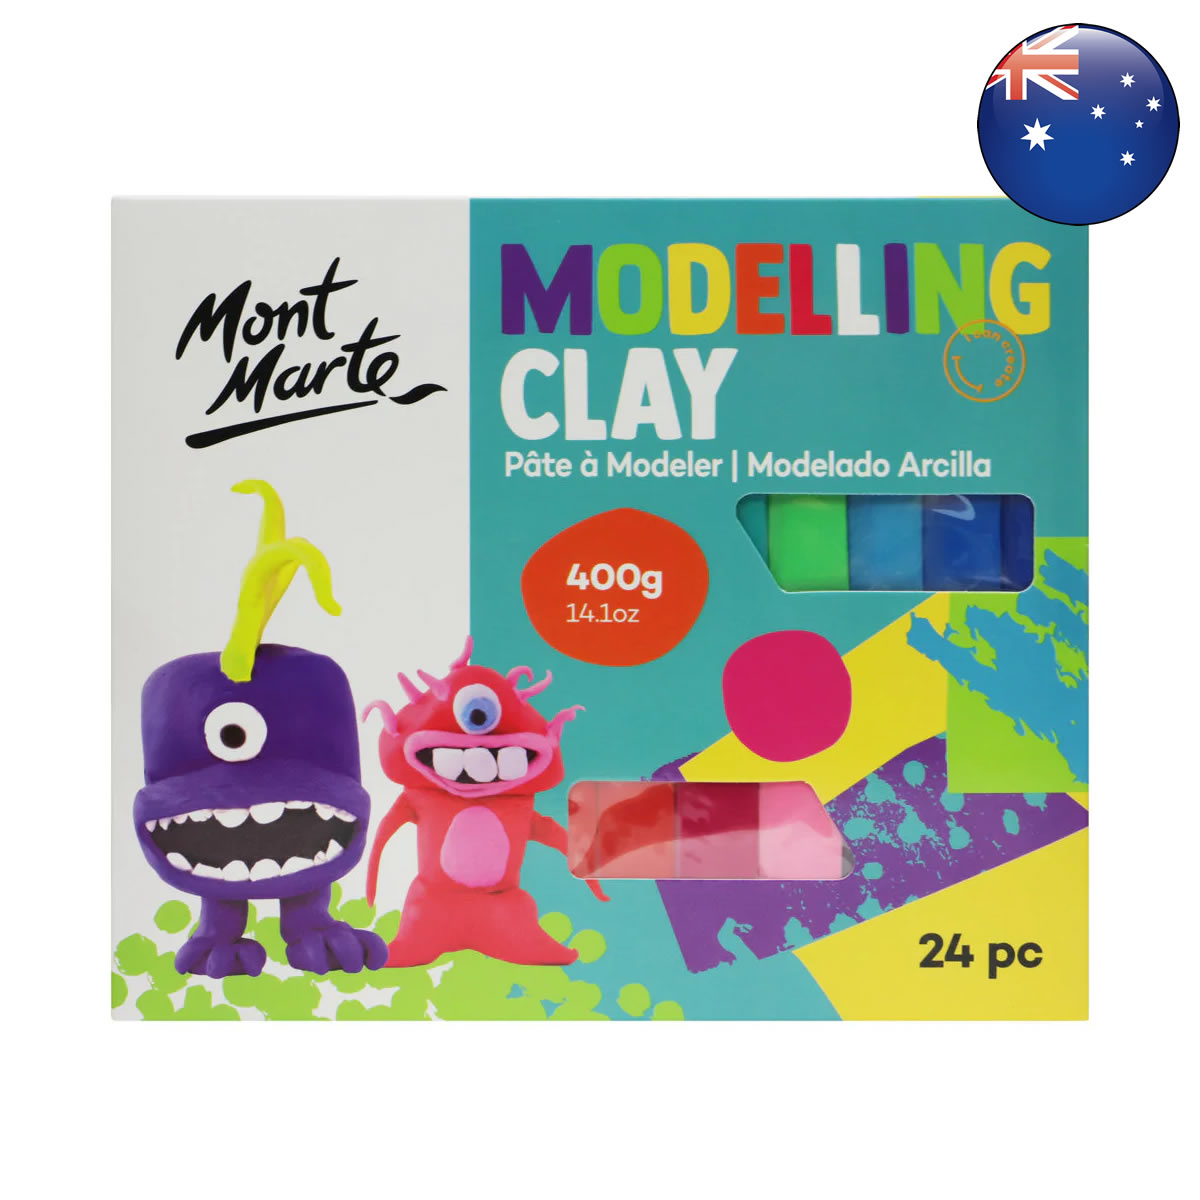 Mont Marte Modelling Clay 400g (14.1oz) 24pc 彩色造型粘土 400g (14.1oz) 24色